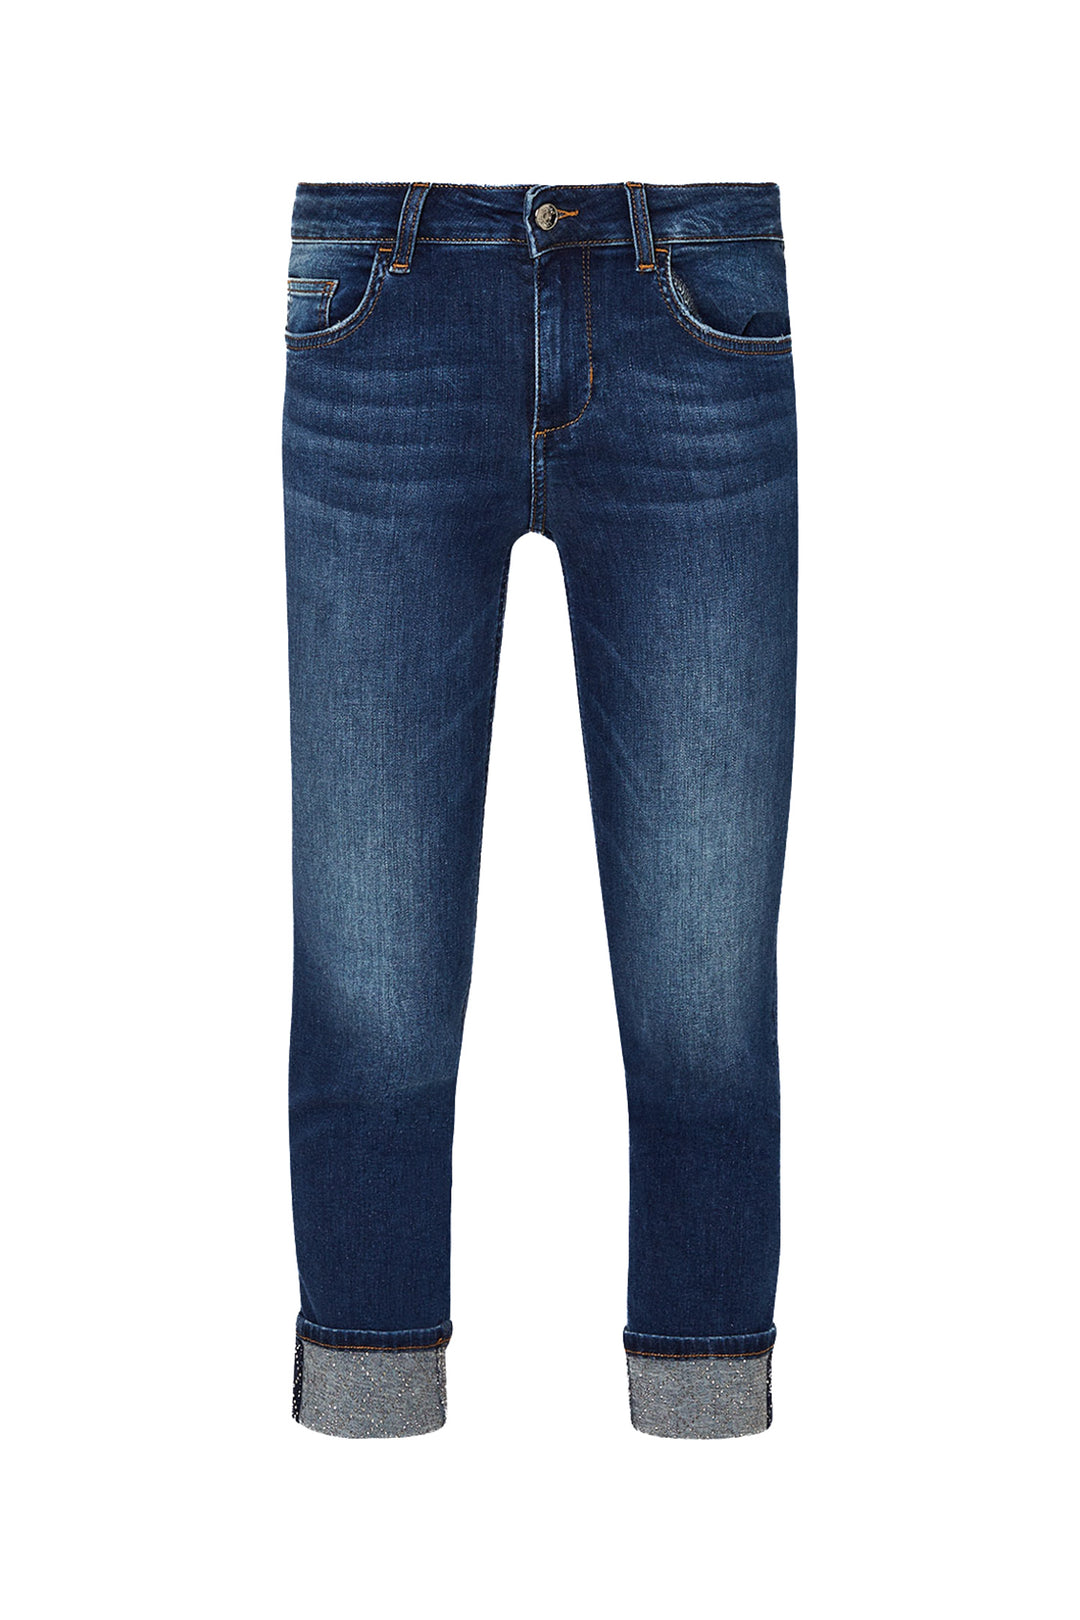 LIU JO Jeans cropped bottom up in denim di cotone stretch lavaggio used - Mancinelli 1954